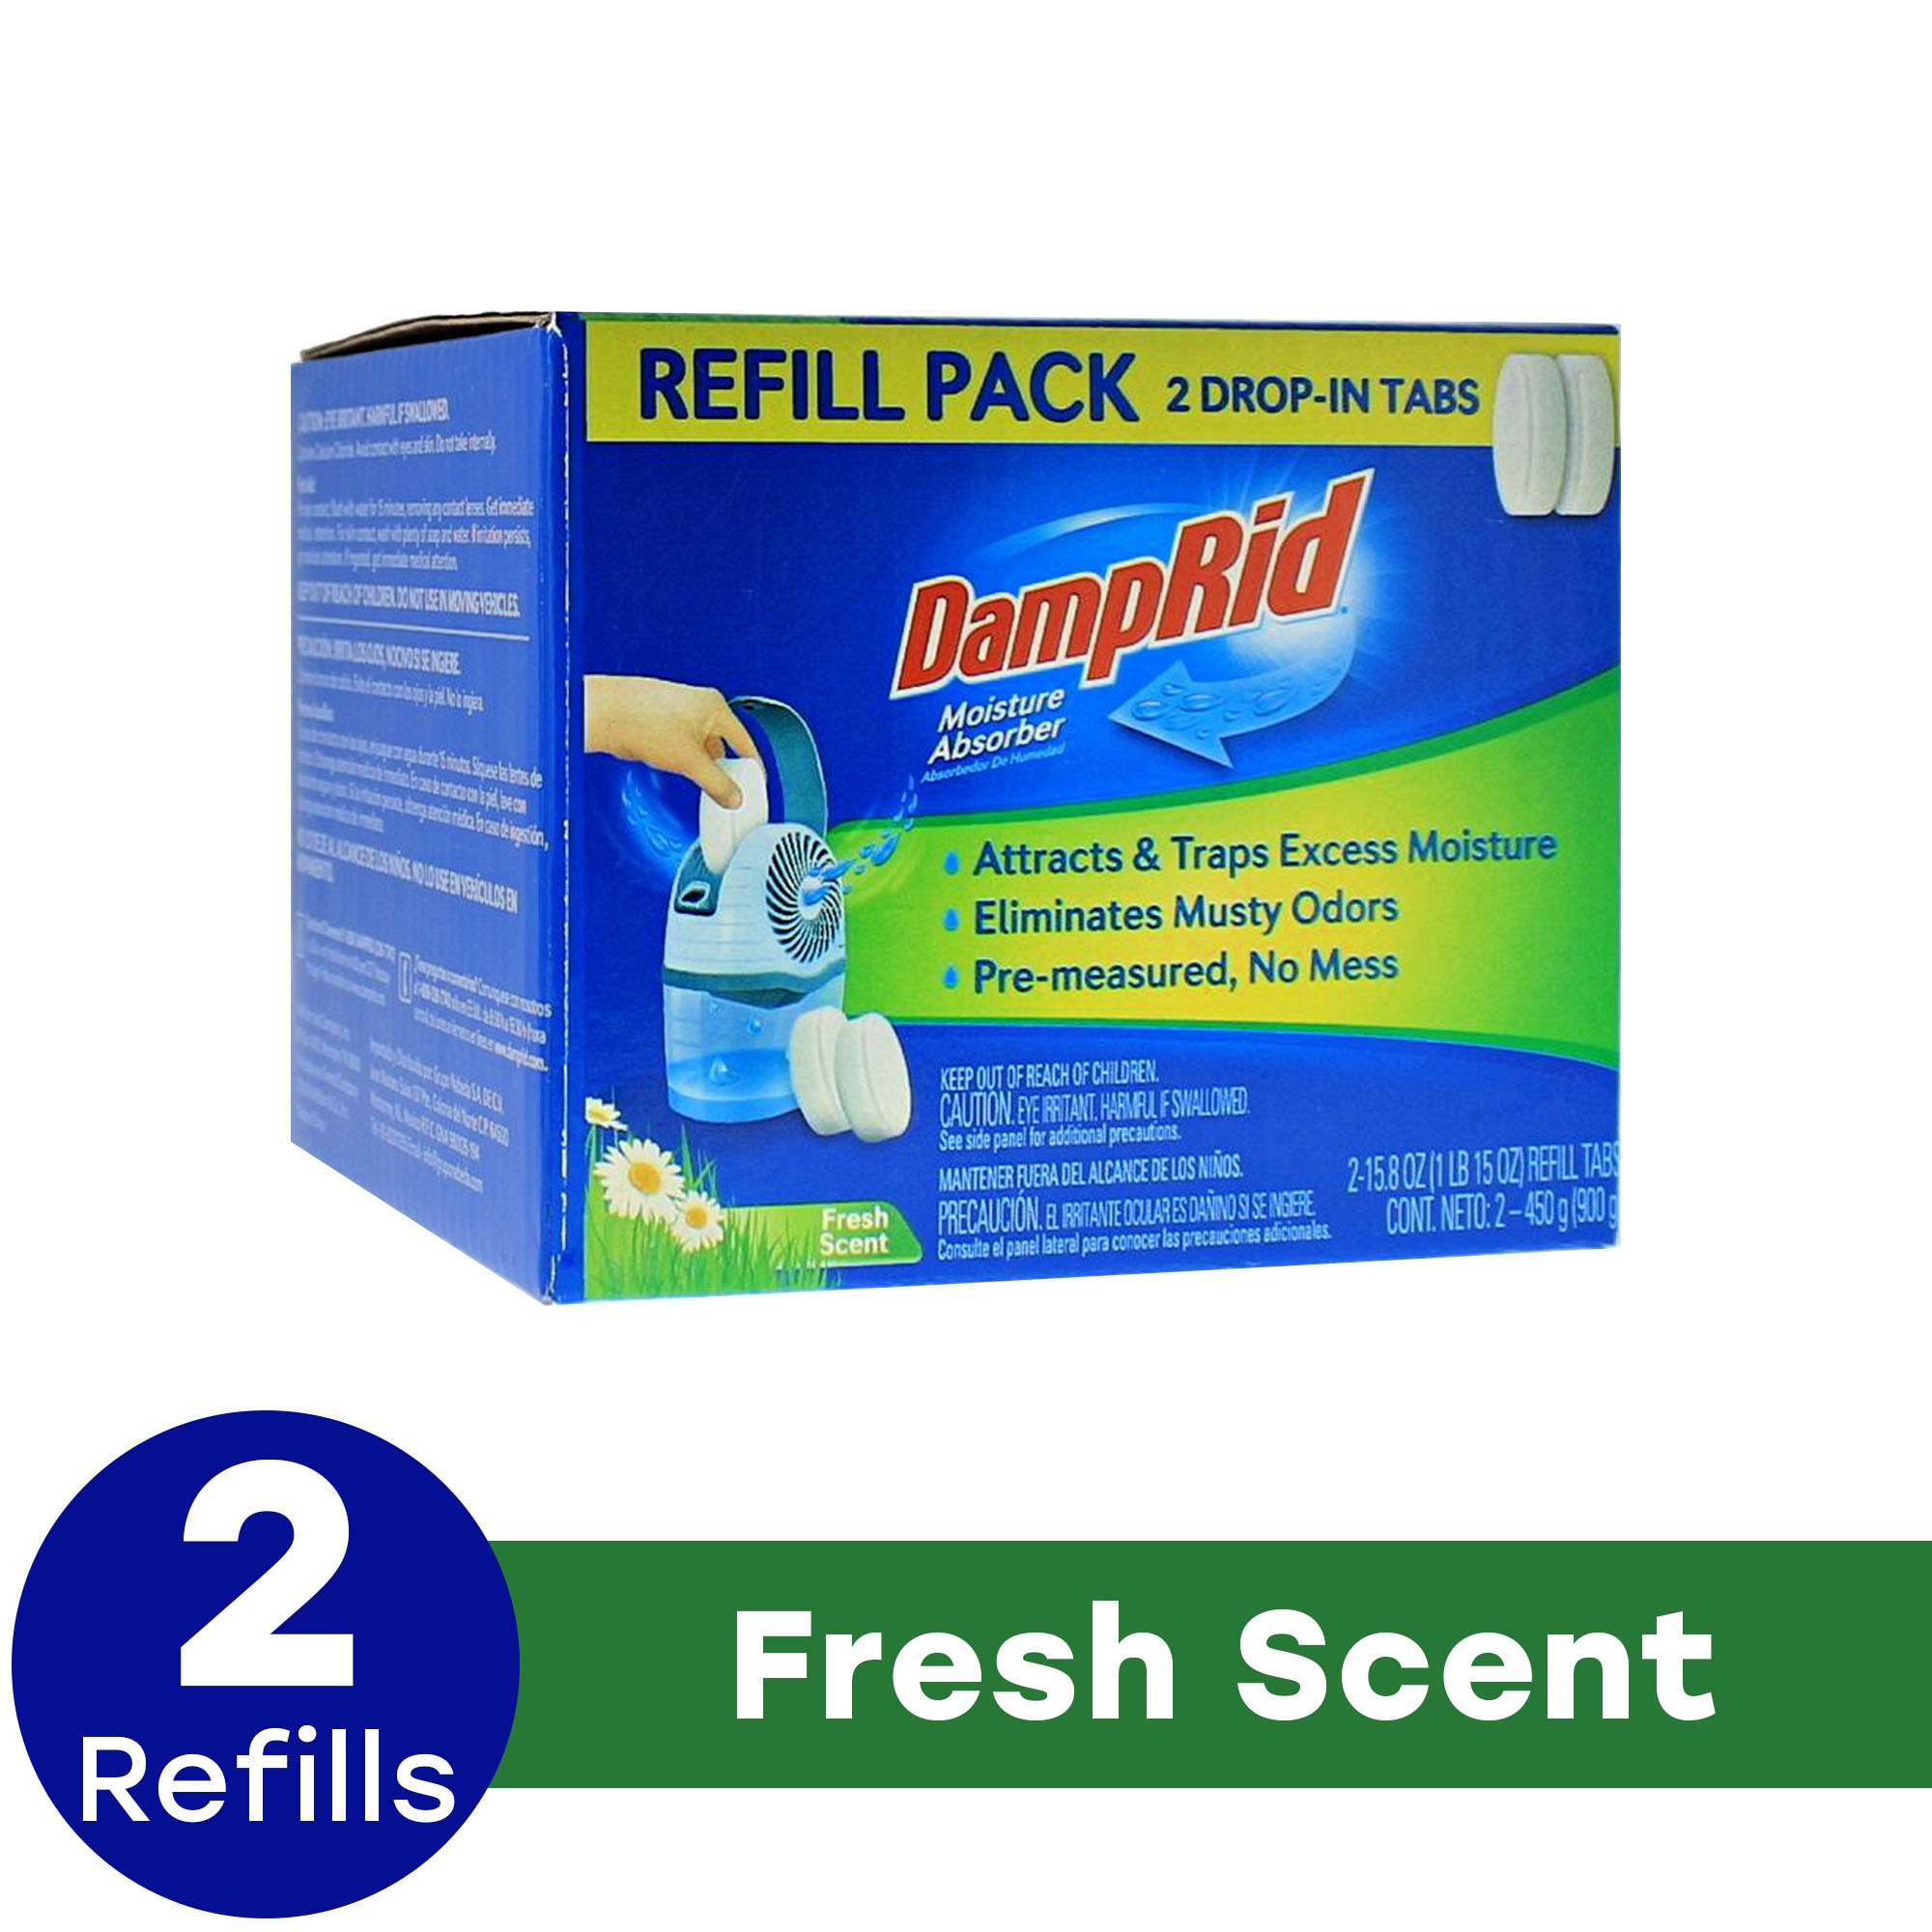 DampRid 31-oz Fresh Refill Moisture Absorber in the Moisture